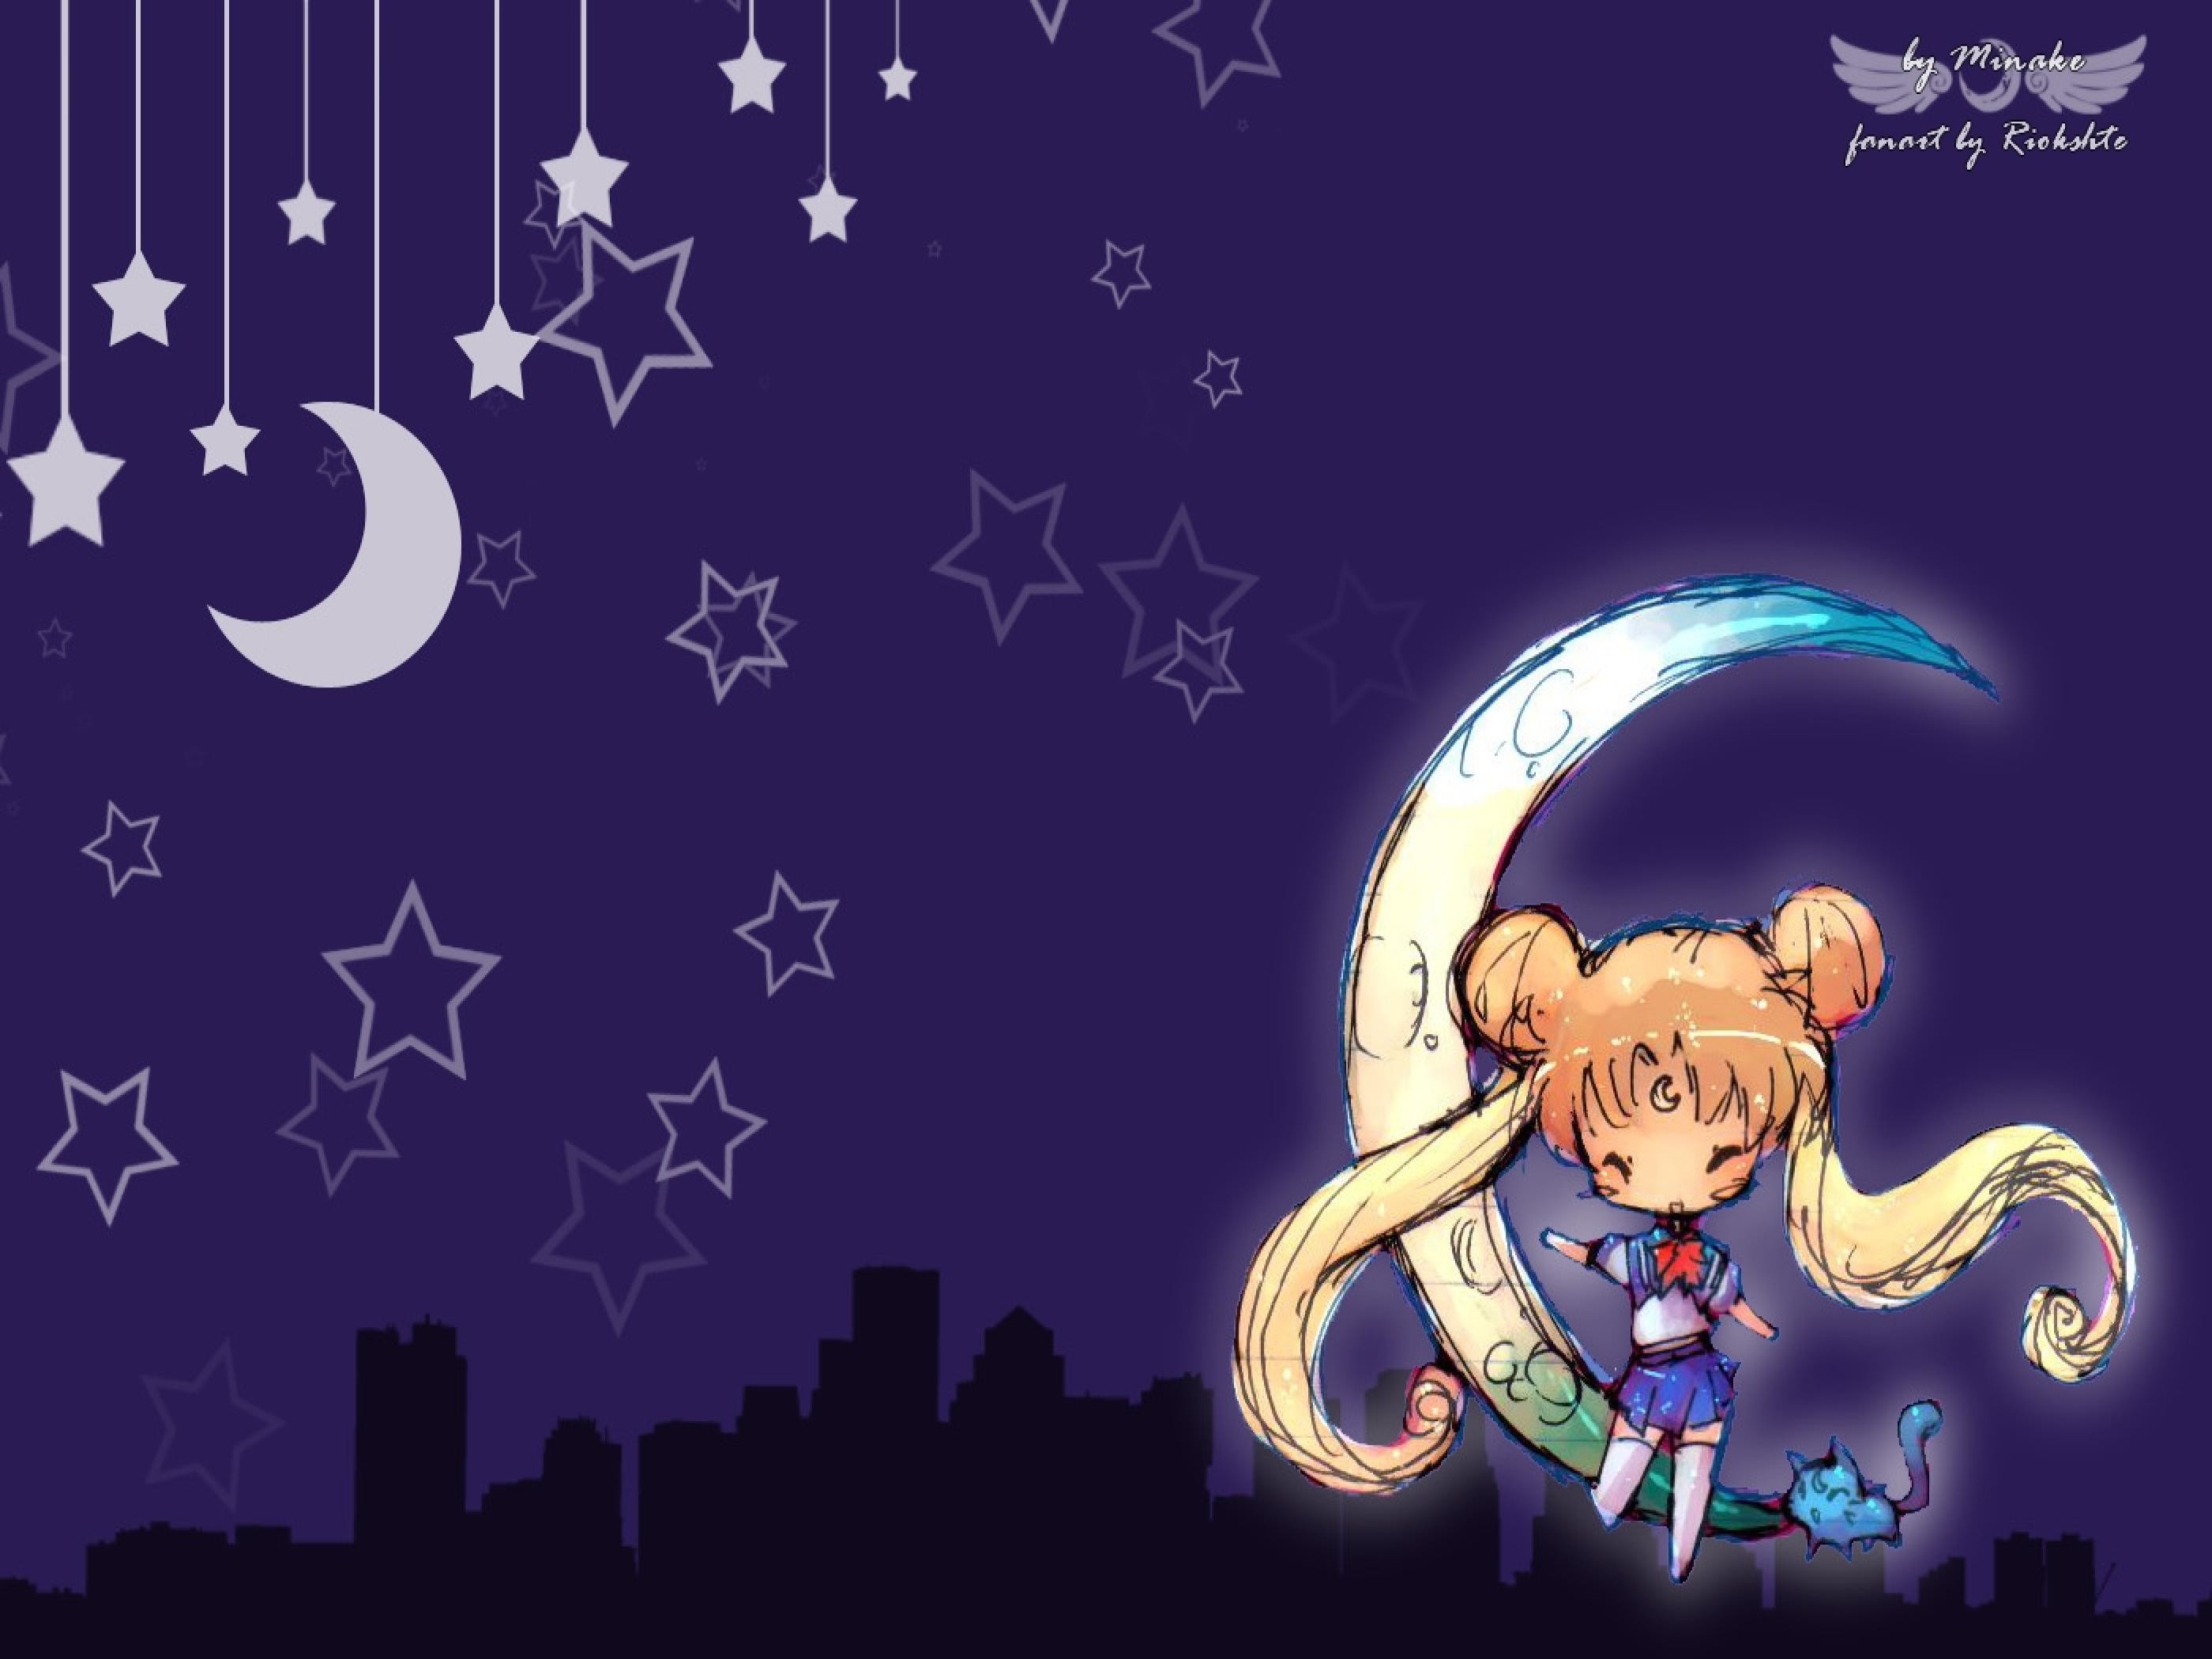 2800x2100 ... wi 92 Sailor Moon Luna Wallpaper 1400x900 Wallimpex com